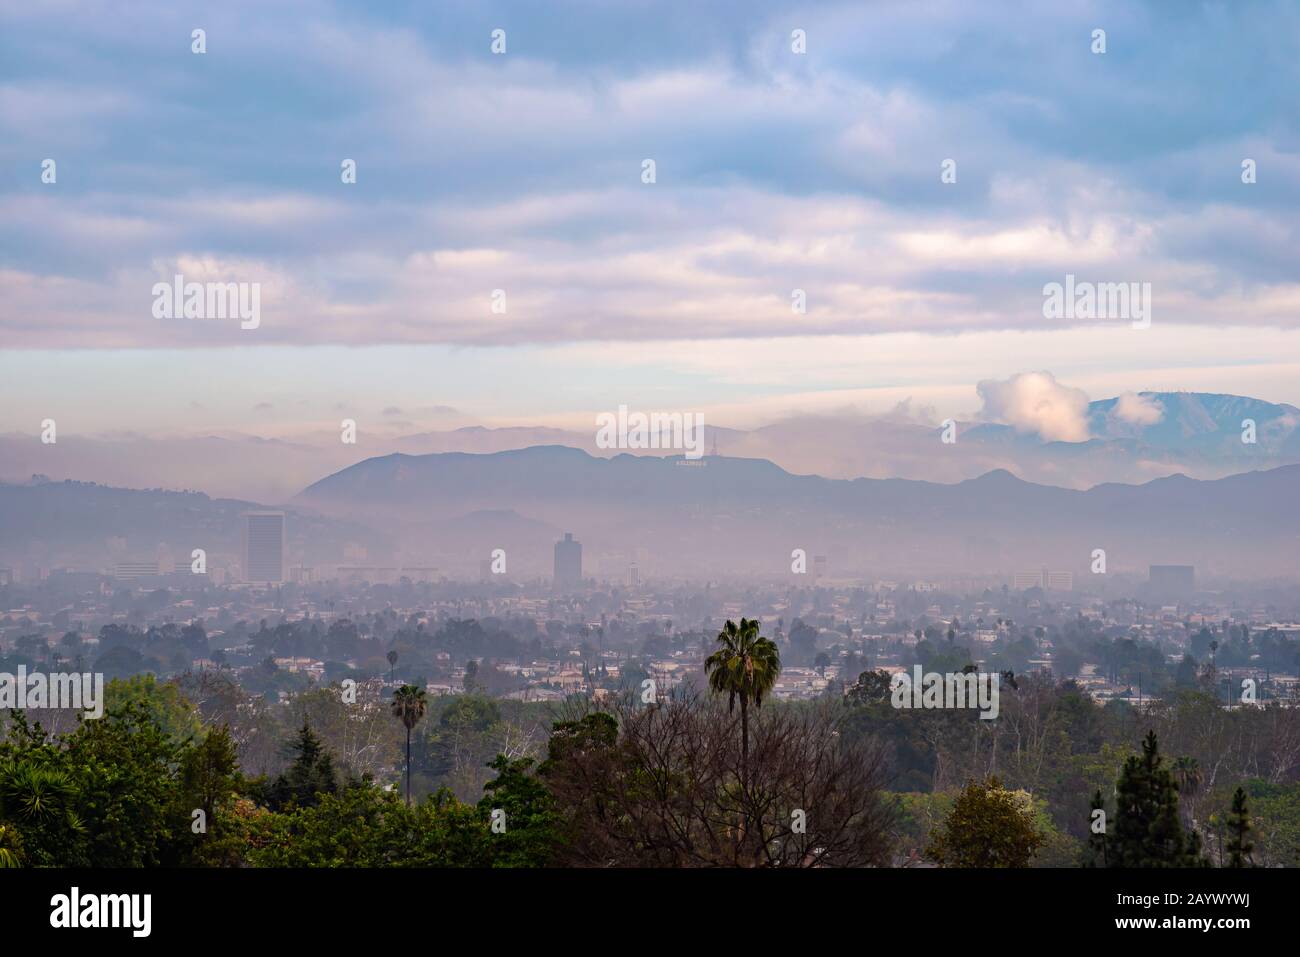 Guardando attraverso il bacino di Los Angeles verso l'insegna di Hollywood, mentre la nebbia mattutina si mescola con il fumo di fuoco selvatico per creare colori inaspettati. Foto Stock